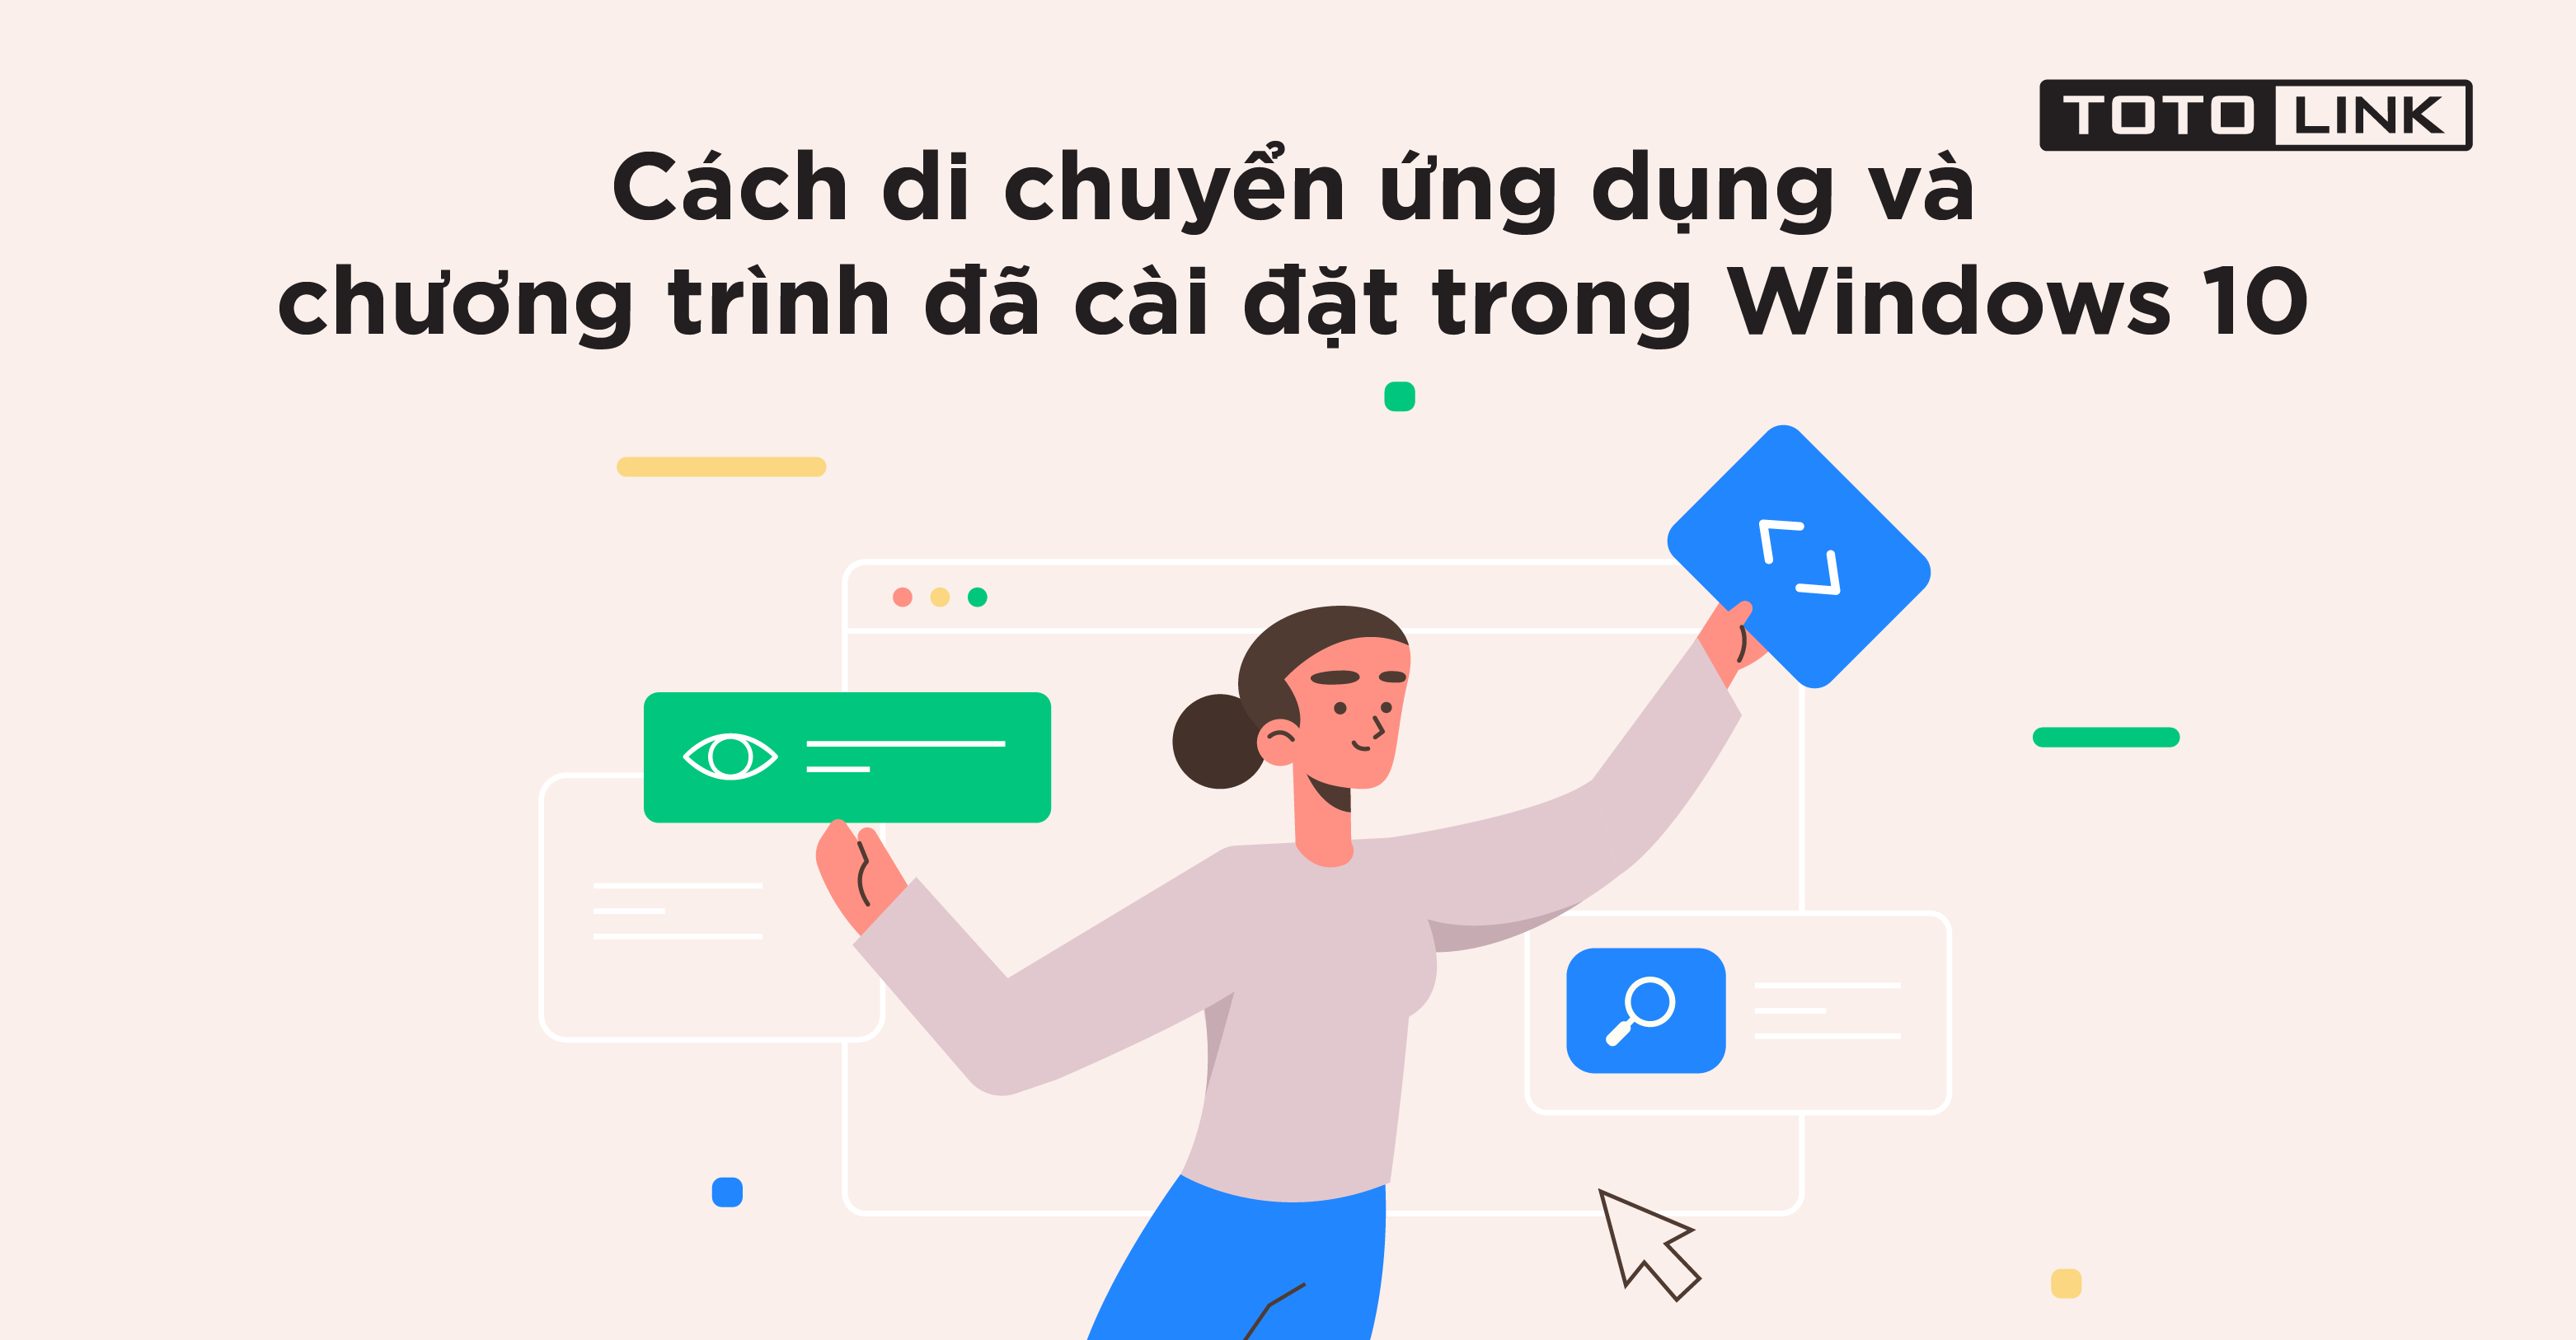 Học nhanh cách di chuyển ứng dụng và chương trình đã cài đặt trong Windows 10 - TOTOLINK Việt Nam